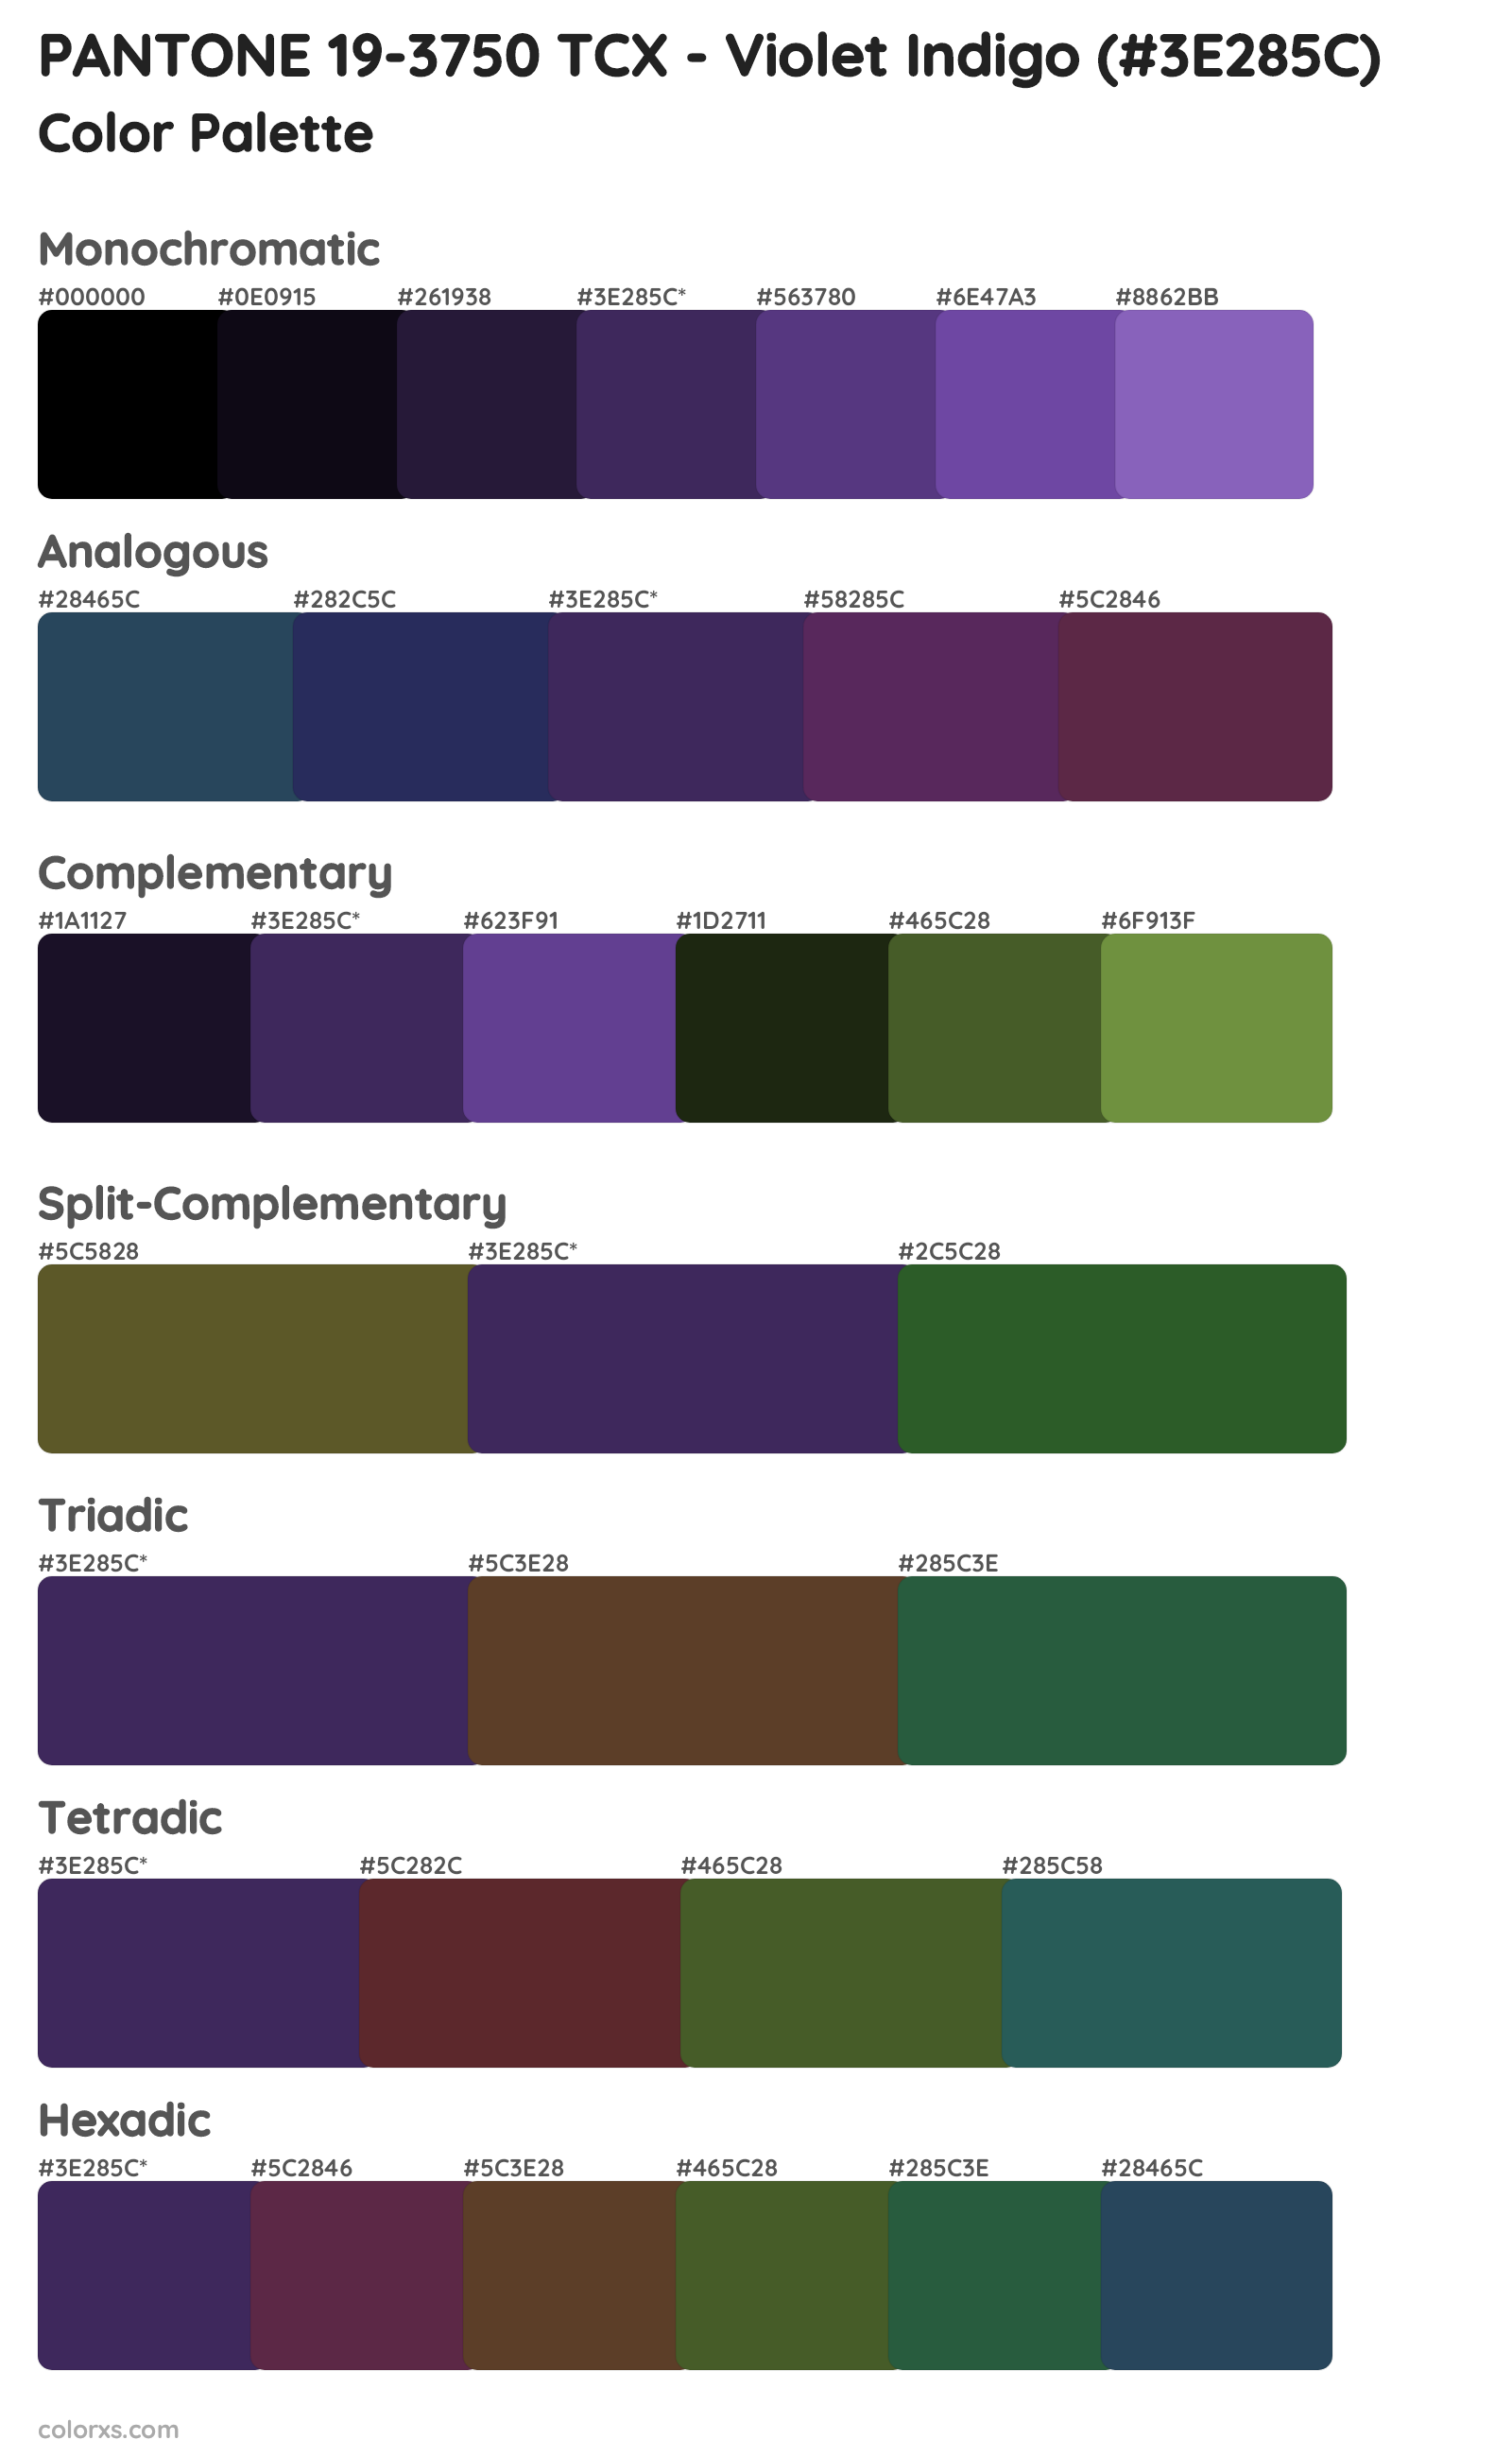 PANTONE 19-3750 TCX - Violet Indigo Color Scheme Palettes